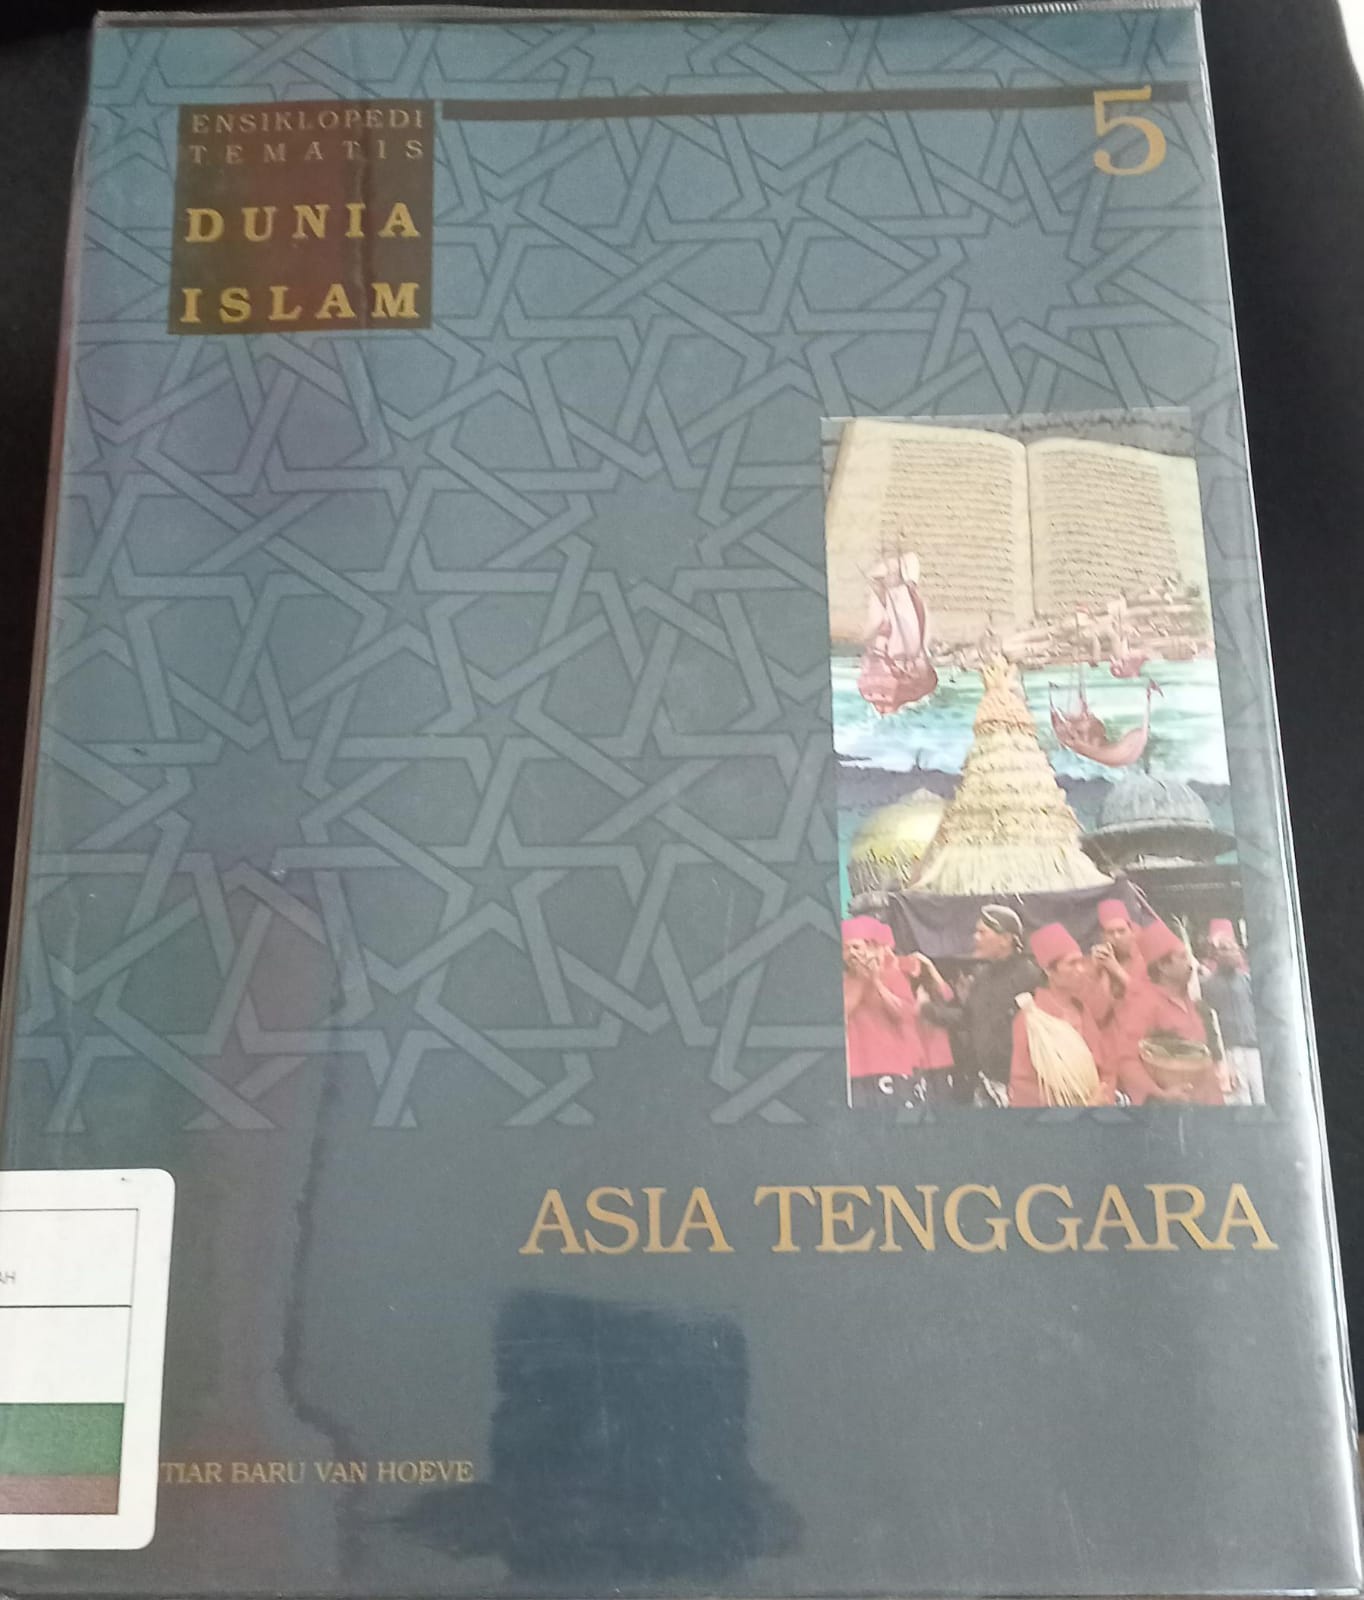 Ensiklopedi tematis dunia islam jilid 5 :  Asia Tenggara